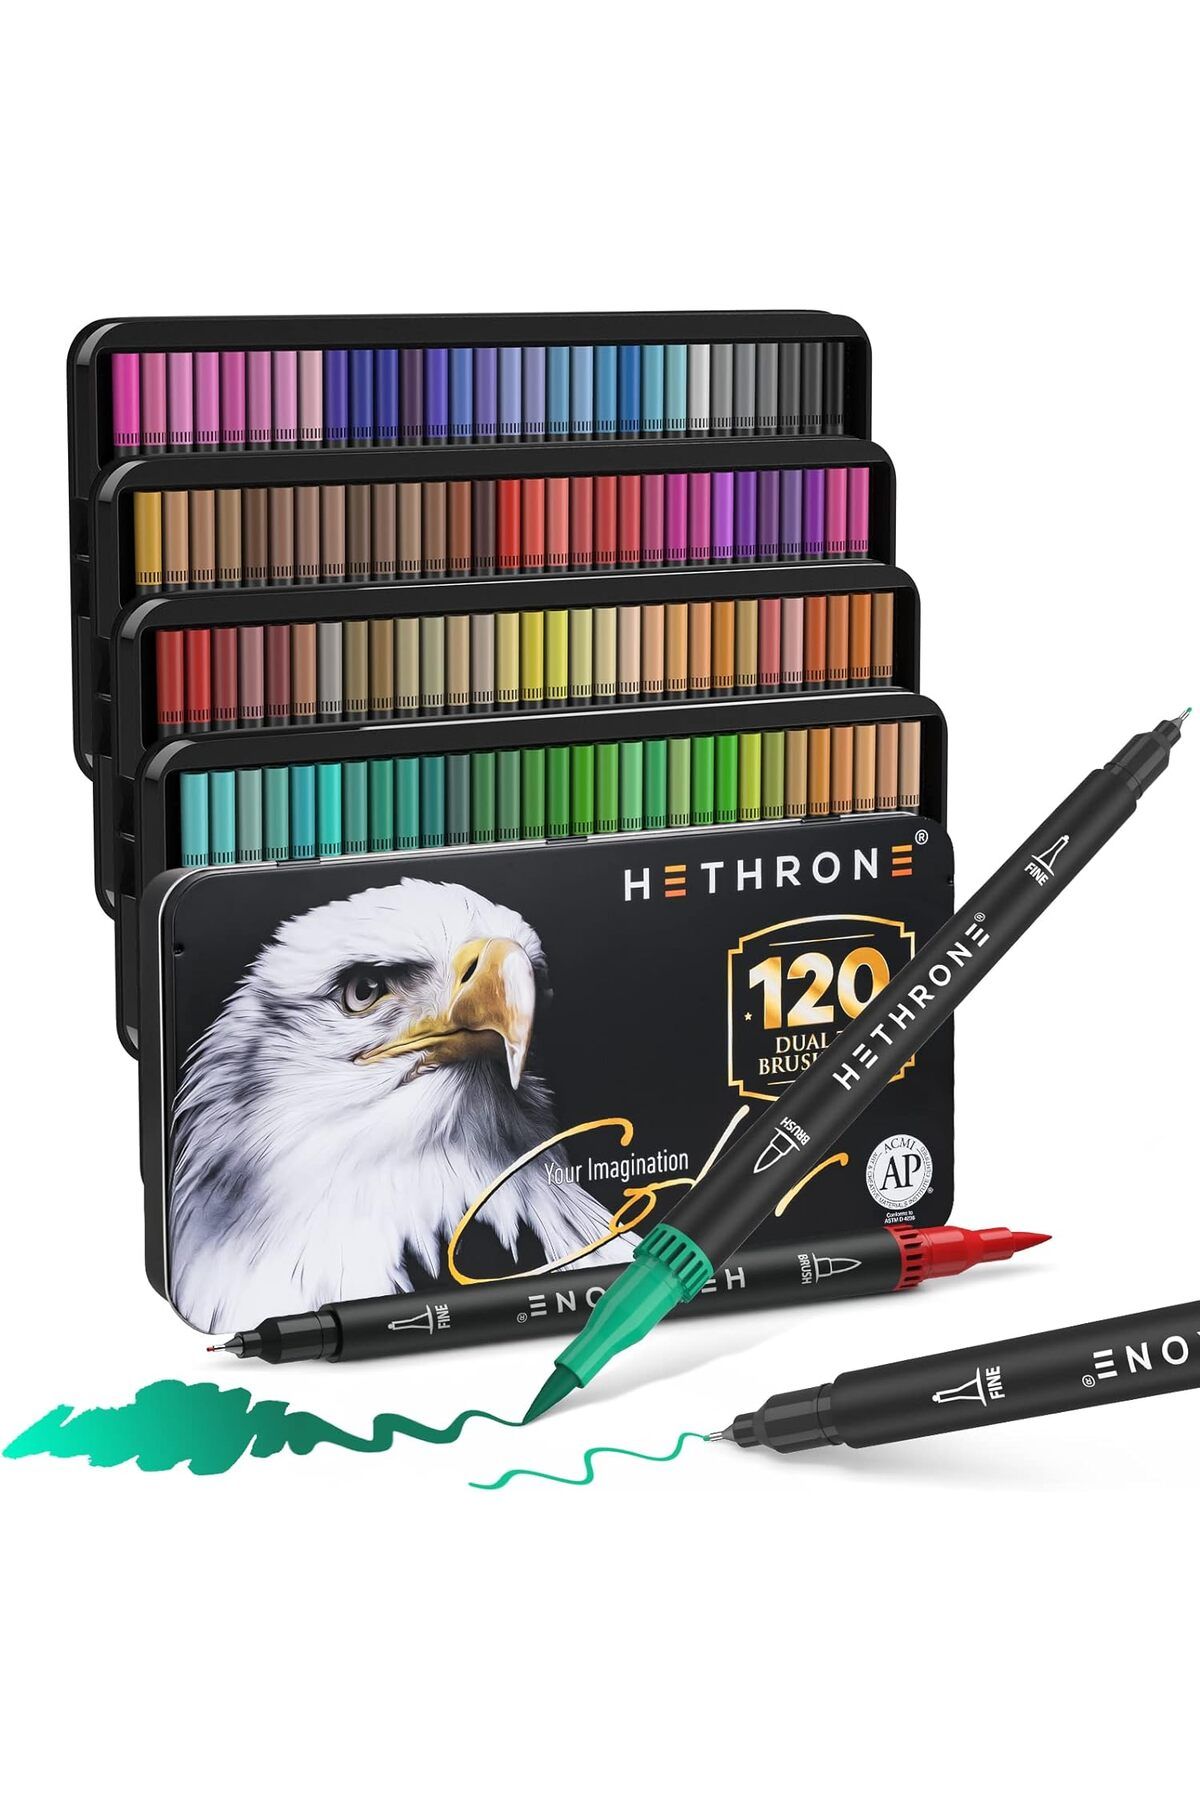 Art Tone Hethrone 120 Renk Dual Tip Brush Pens Lux Set Çift Uçlu Fırça Kalem Seti Resim Yazı Kaligrafi İçin